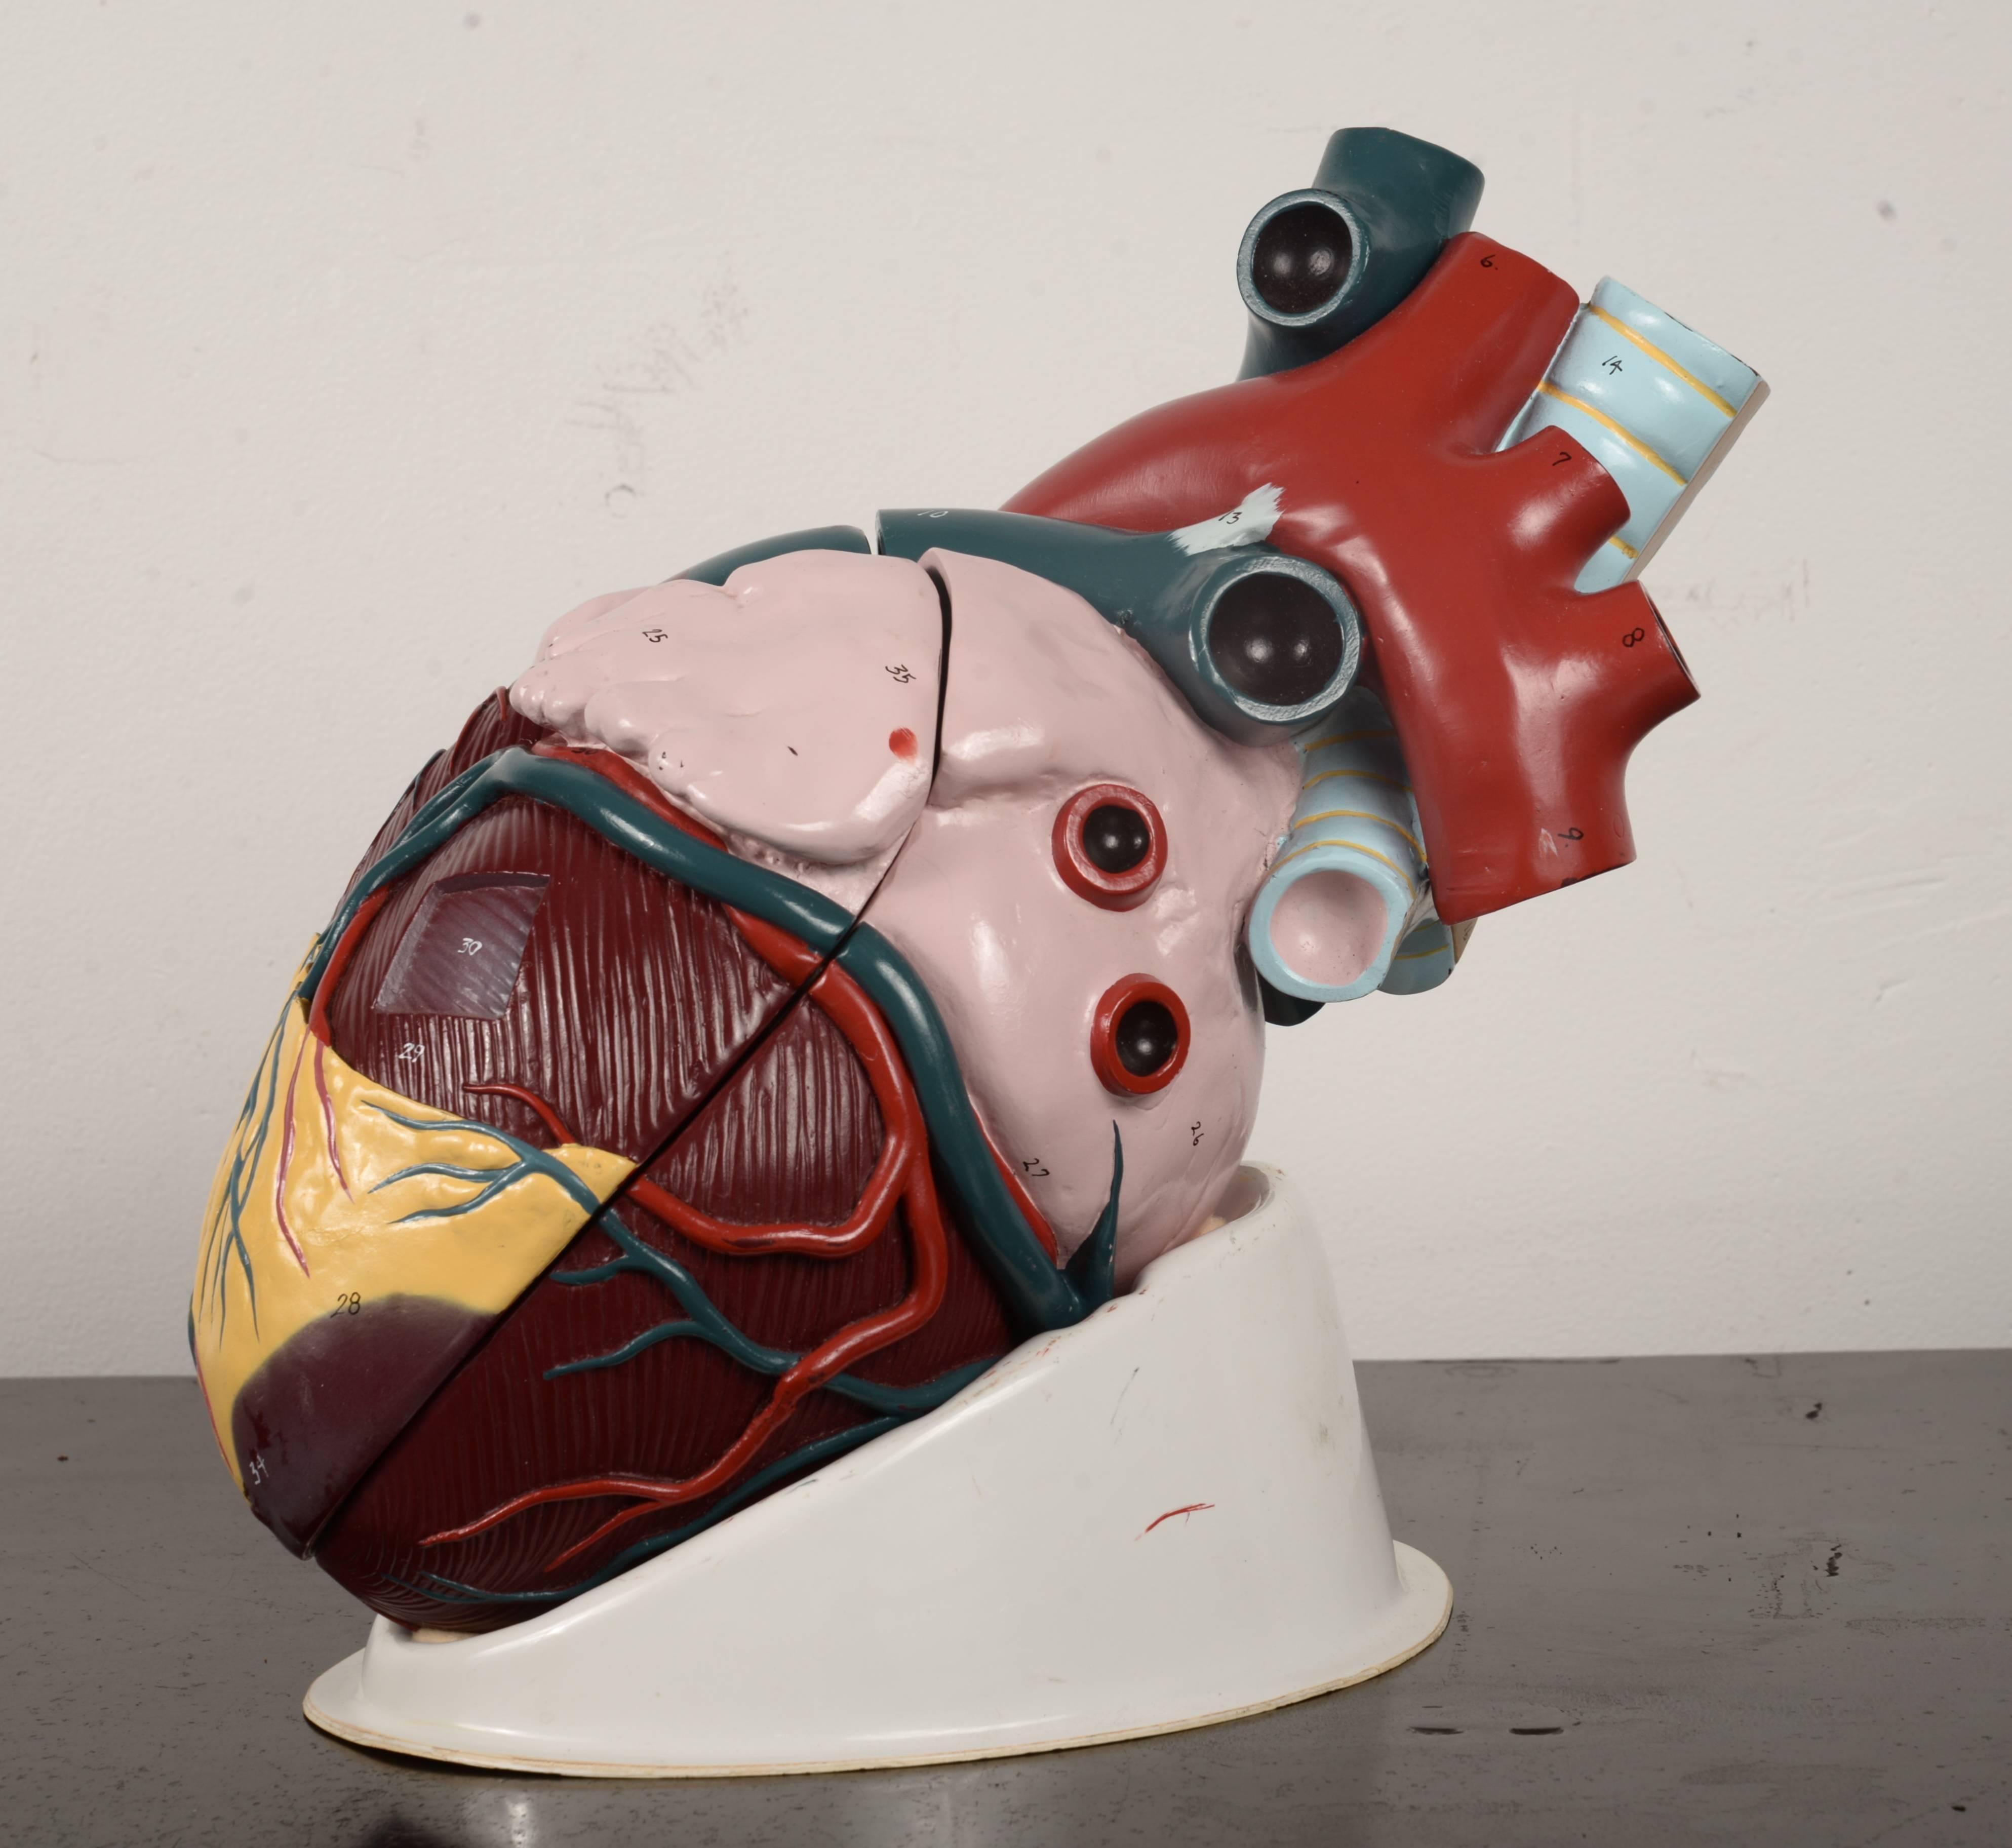 Unique and unusual segmented heart model.